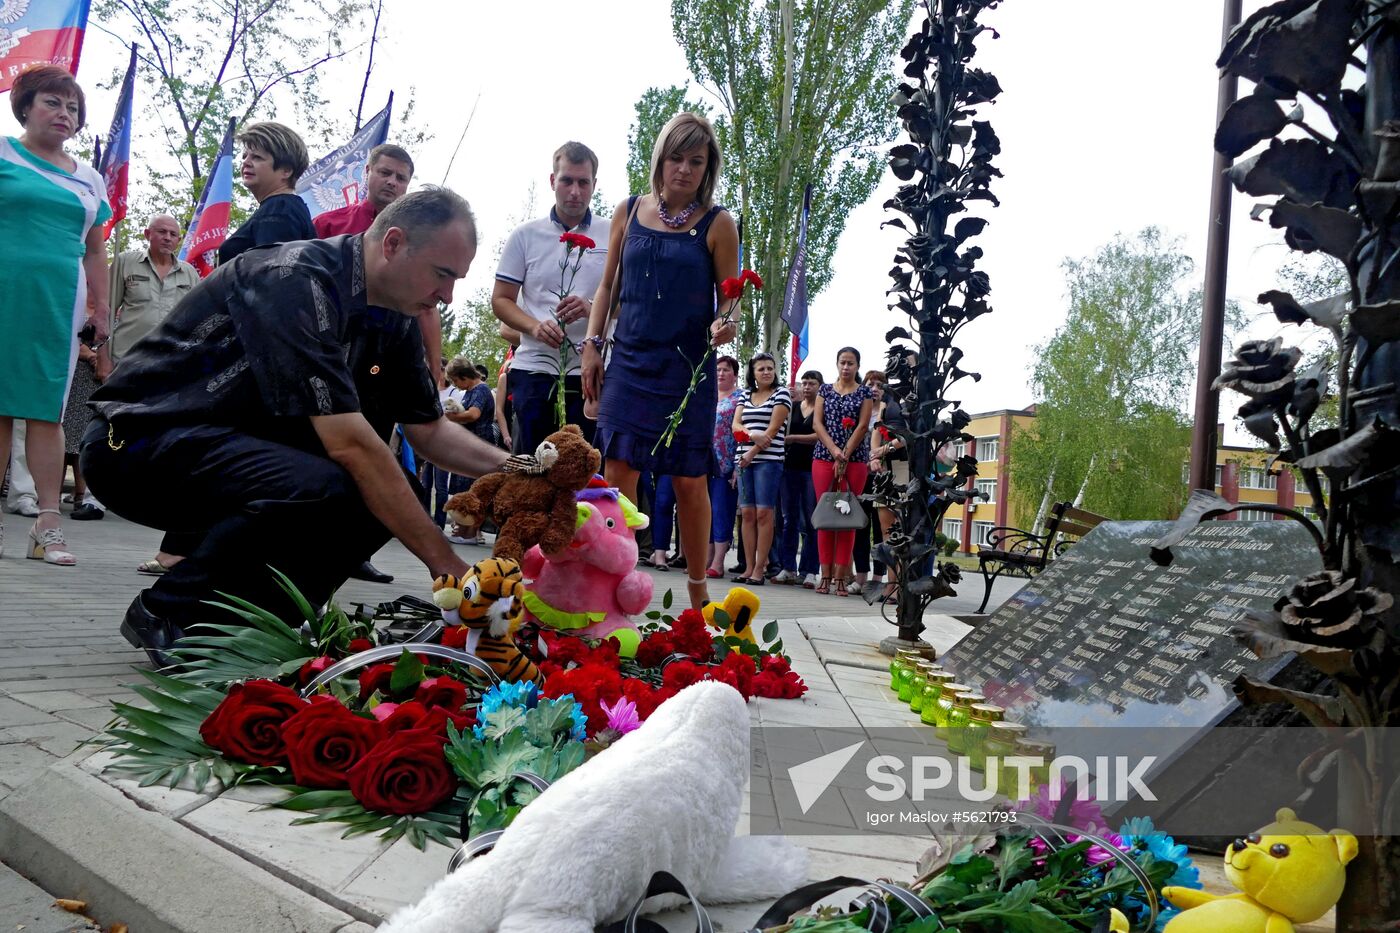 Commemorative event for children in Donetsk